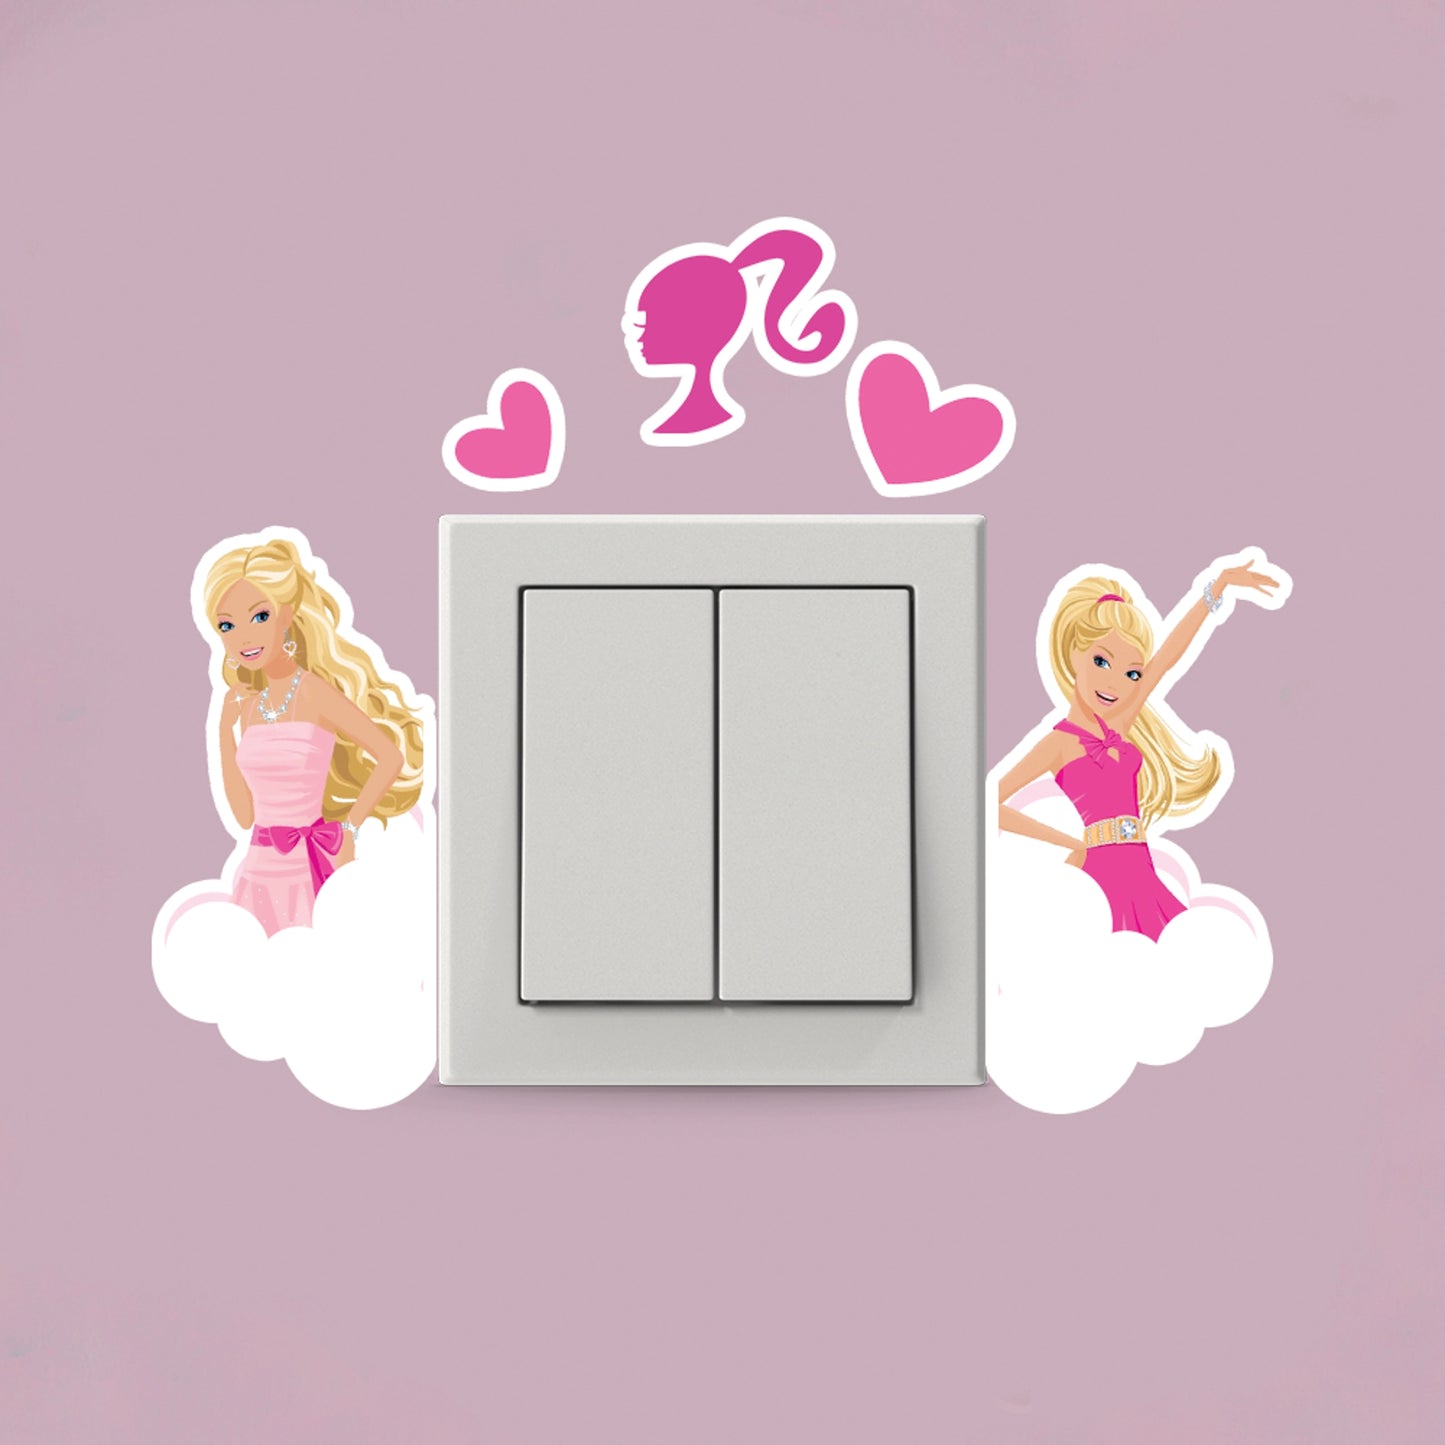 Stikeri za prekidače - Barbie